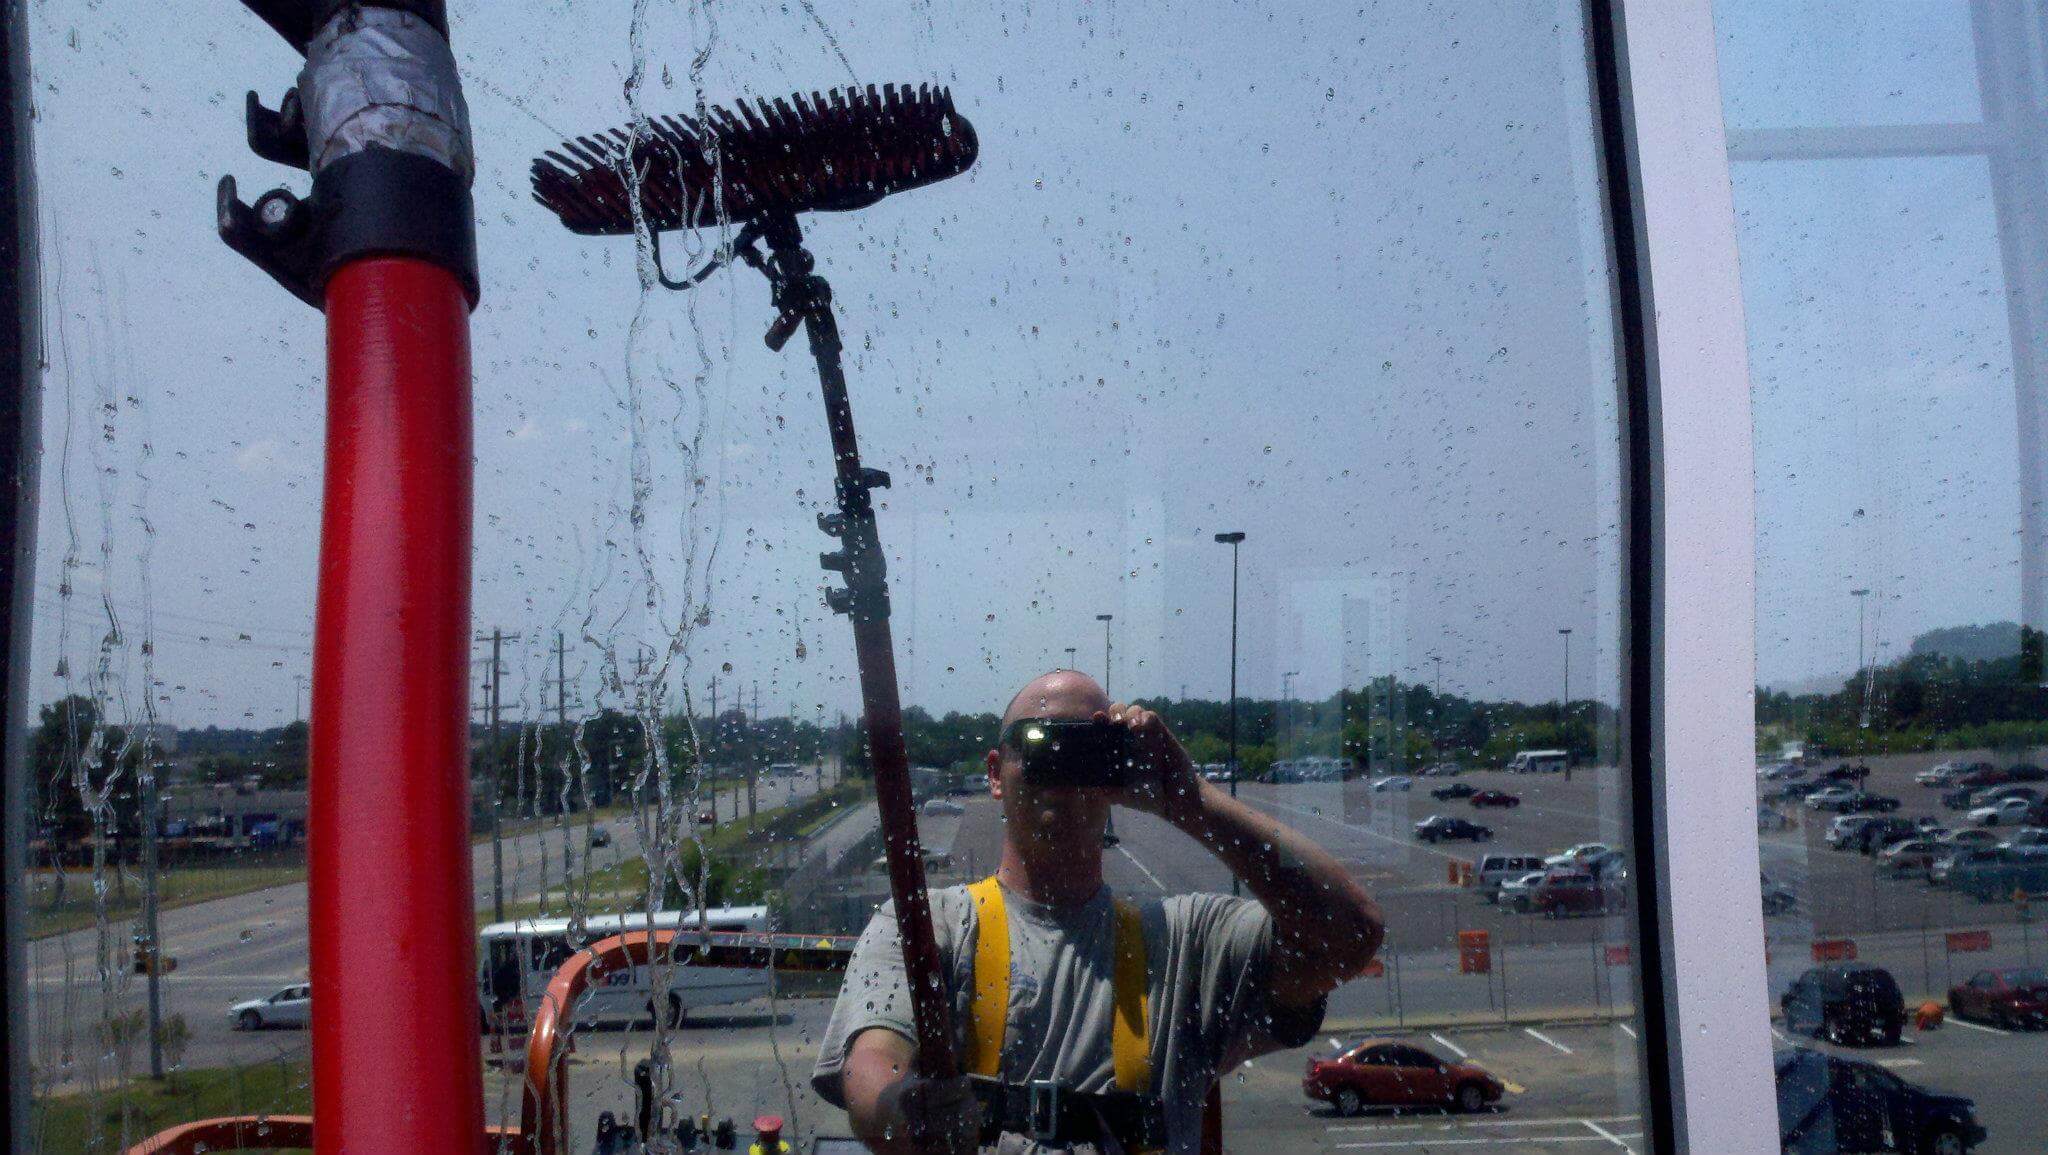 Best window cleaning